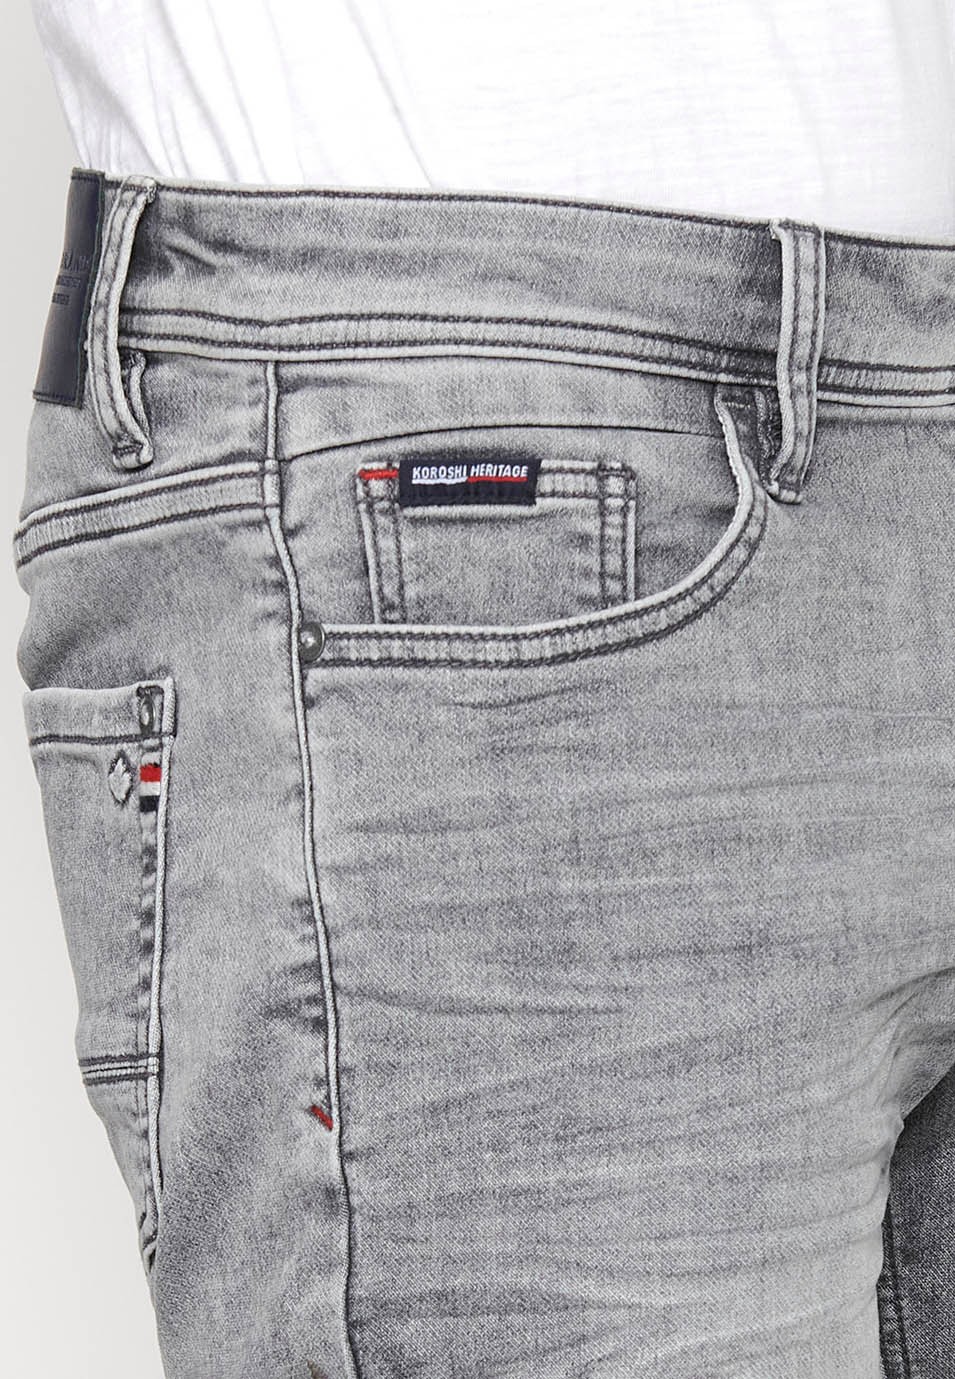 Jeansshorts mit Frontverschluss mit Reißverschluss und Knopf sowie fünf Taschen, eine Tasche in grauer Denim-Farbe für Herren